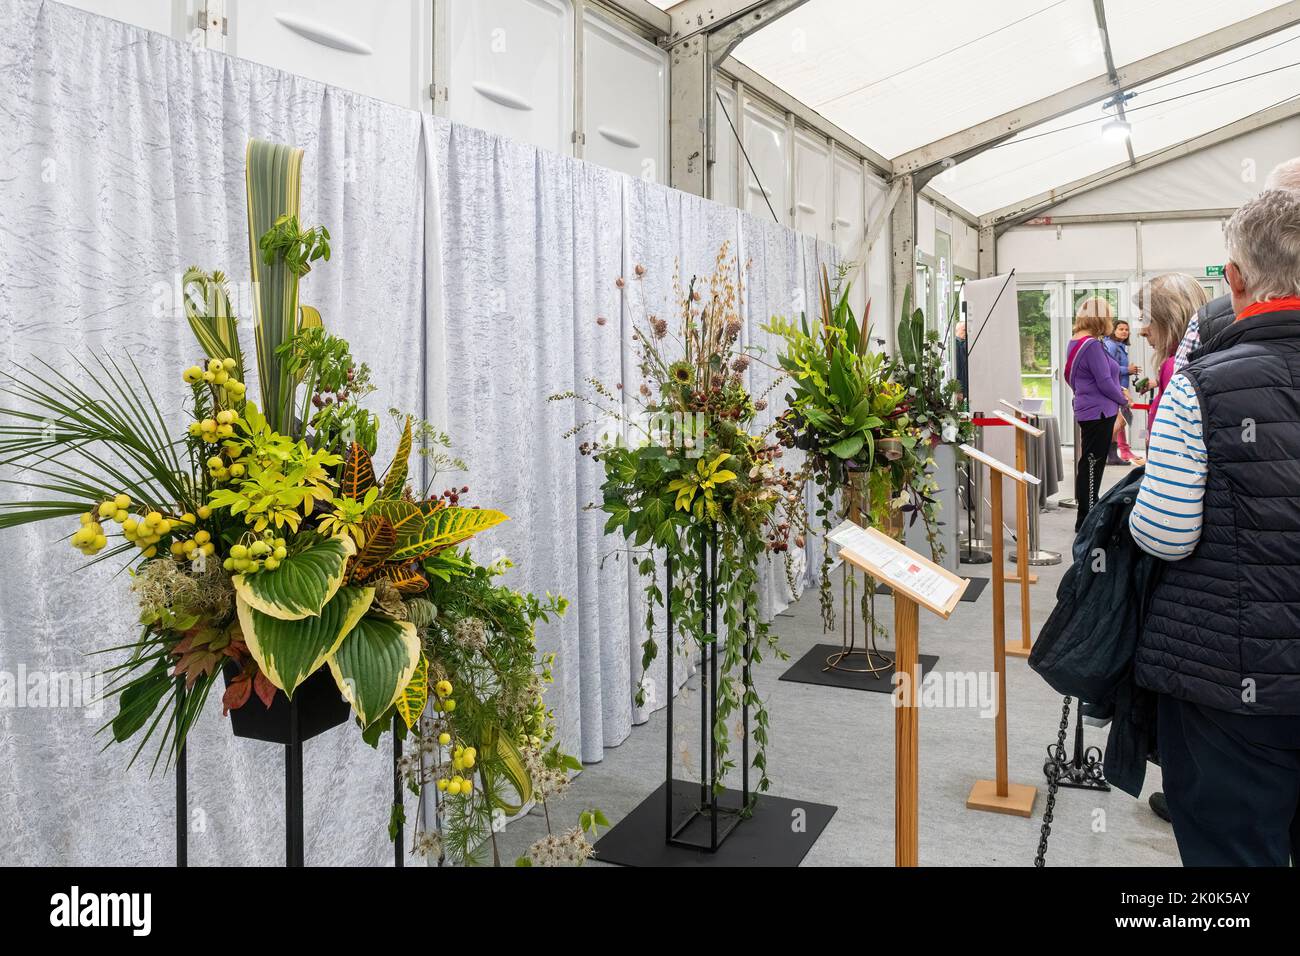 RHS Garden Wisley Flower Show September 2022, eine jährliche Gartenbauveranstaltung in Surrey, England, Großbritannien. Blumenarrangements im Festzelt mit Blumenkunst. Stockfoto